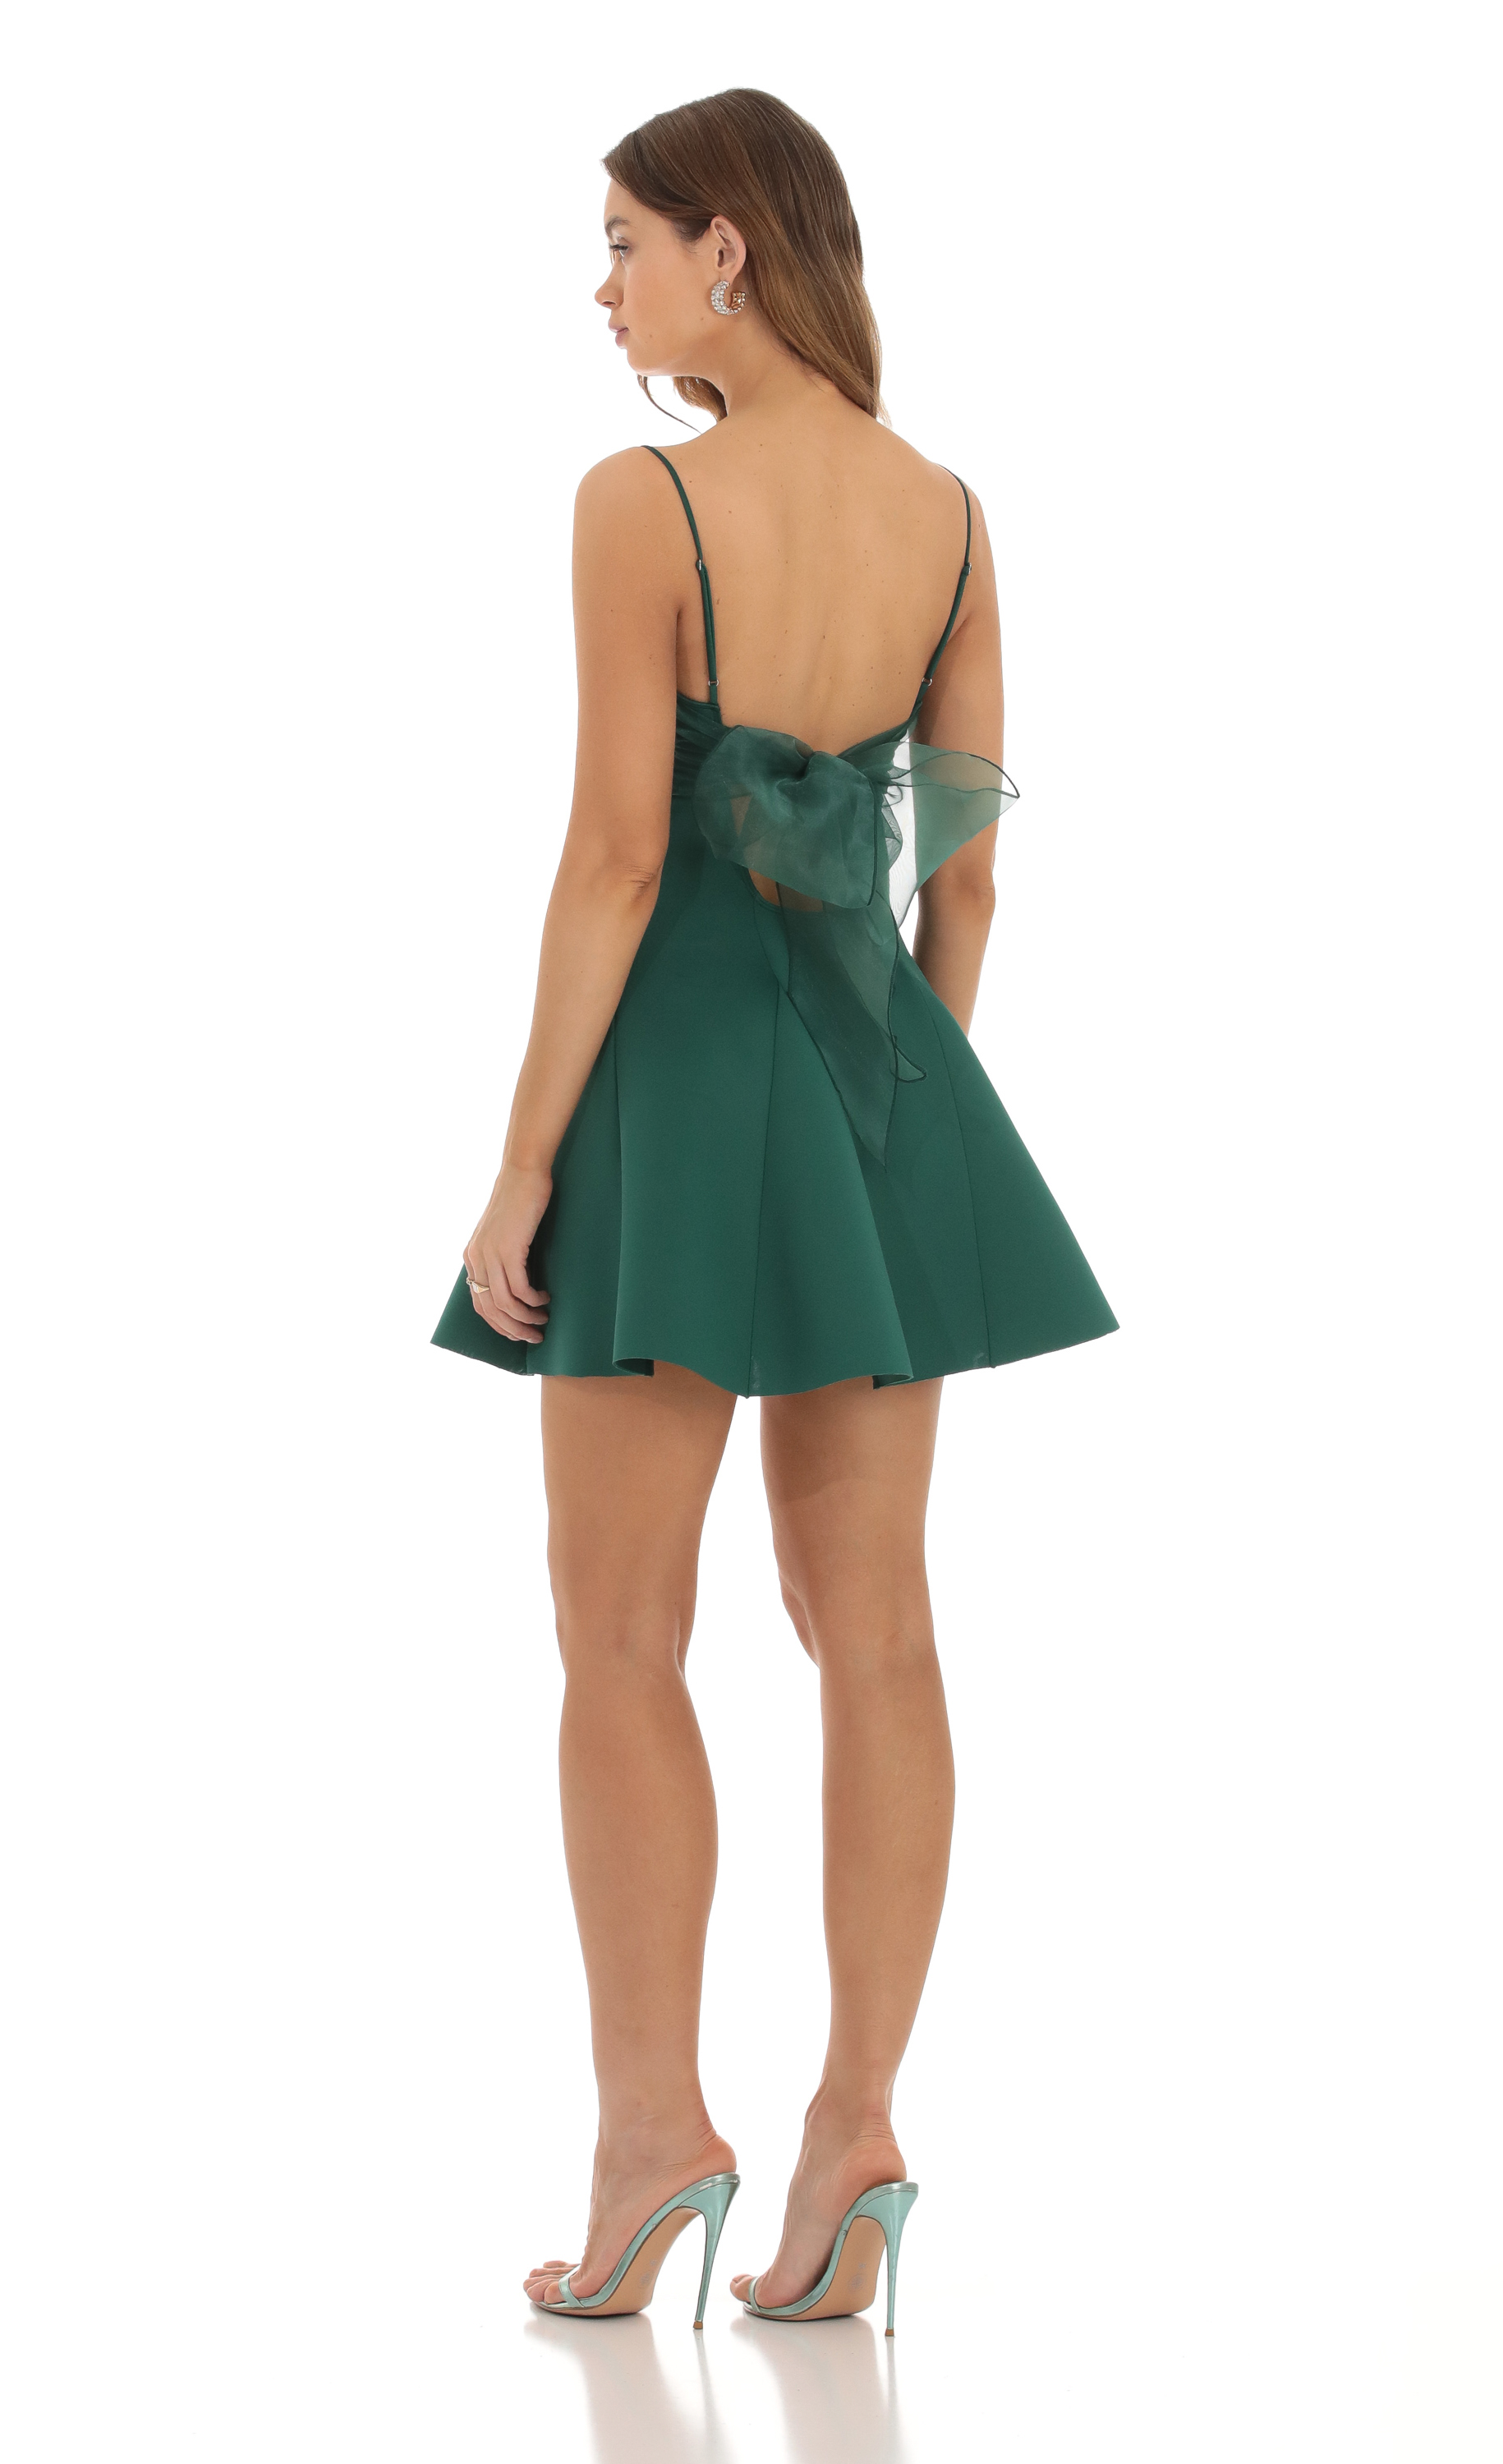 Yule A-Line Mini Dress in Green